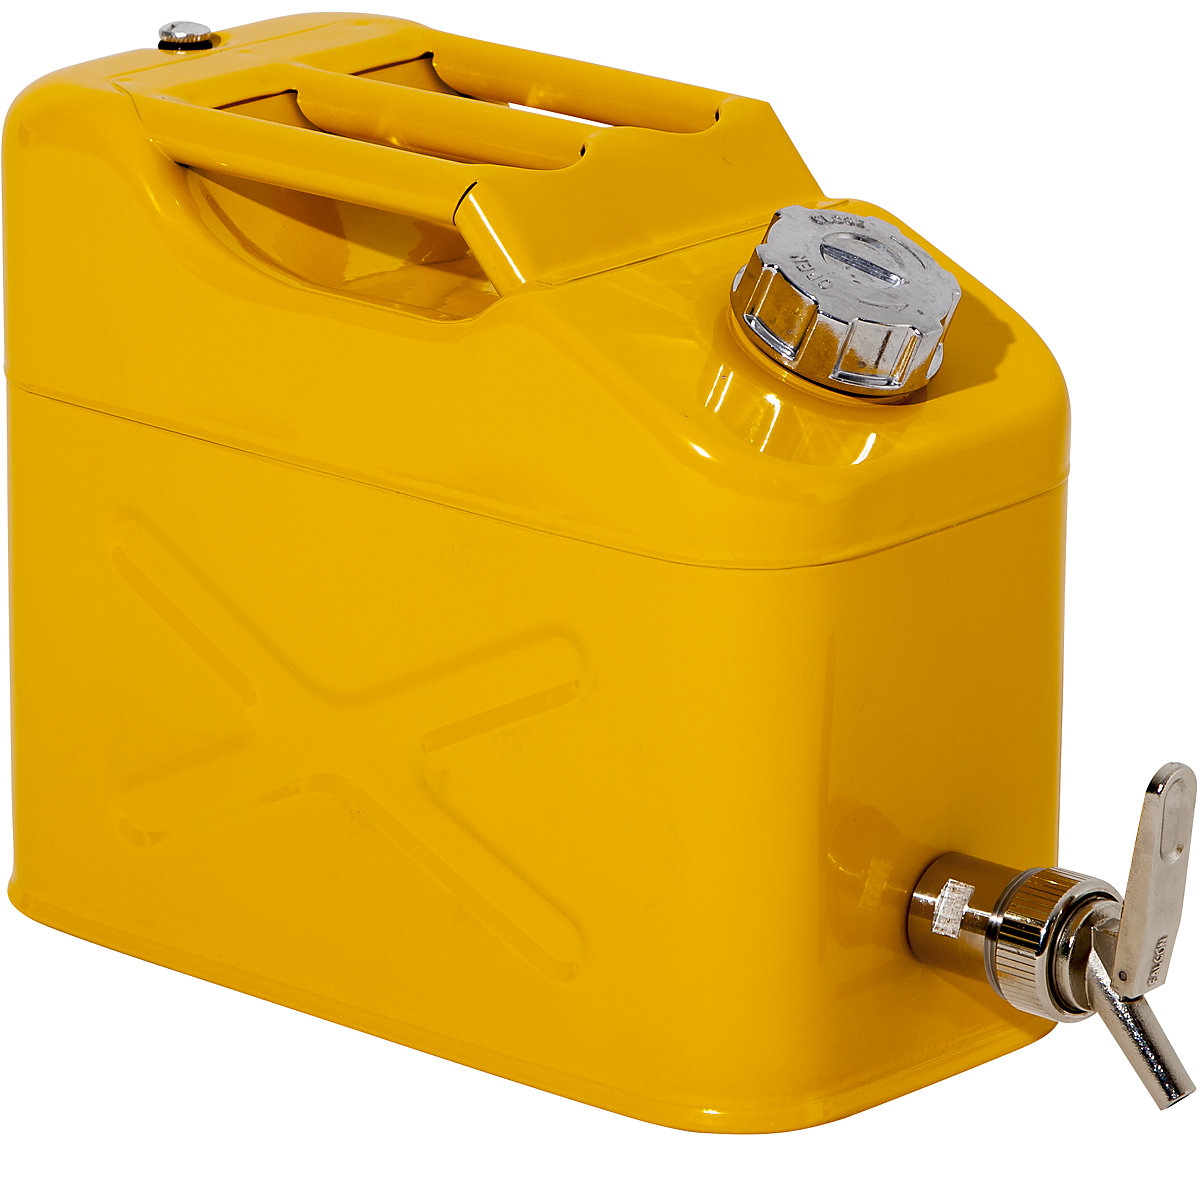 FALCON – Canistră de siguranță cu robinet pentru dozare fină (Imagine produs 10)